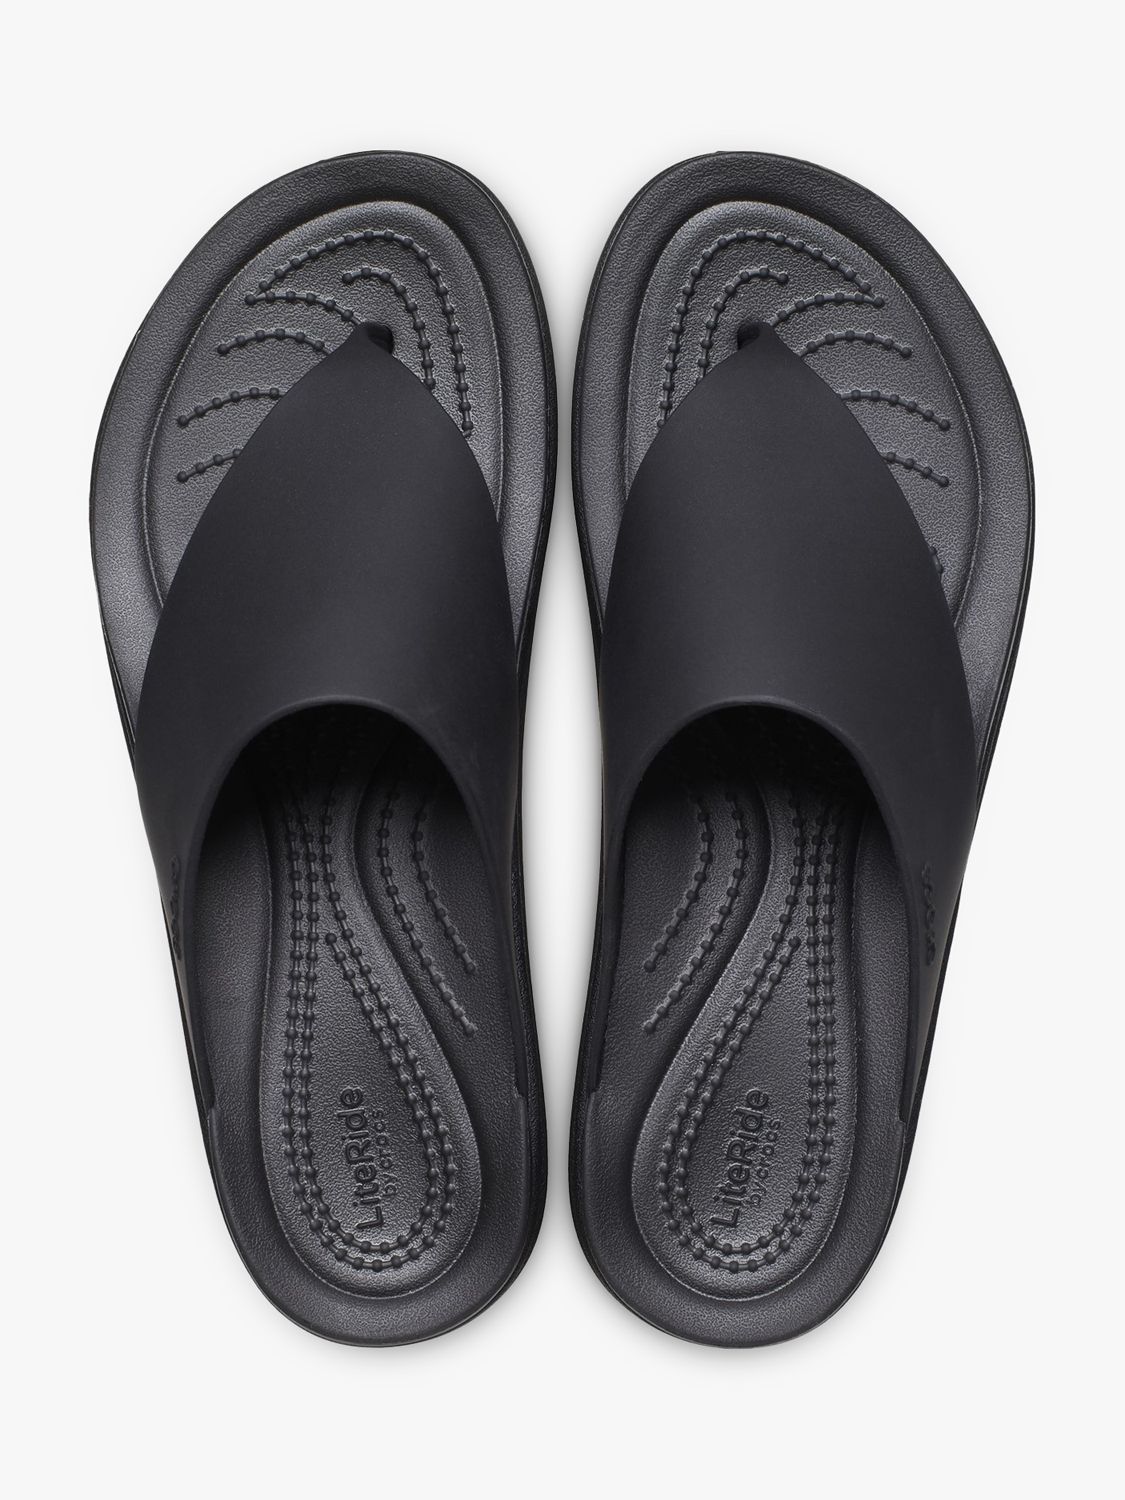 Crocs Brooklyn Flip-Flops, Black, 7